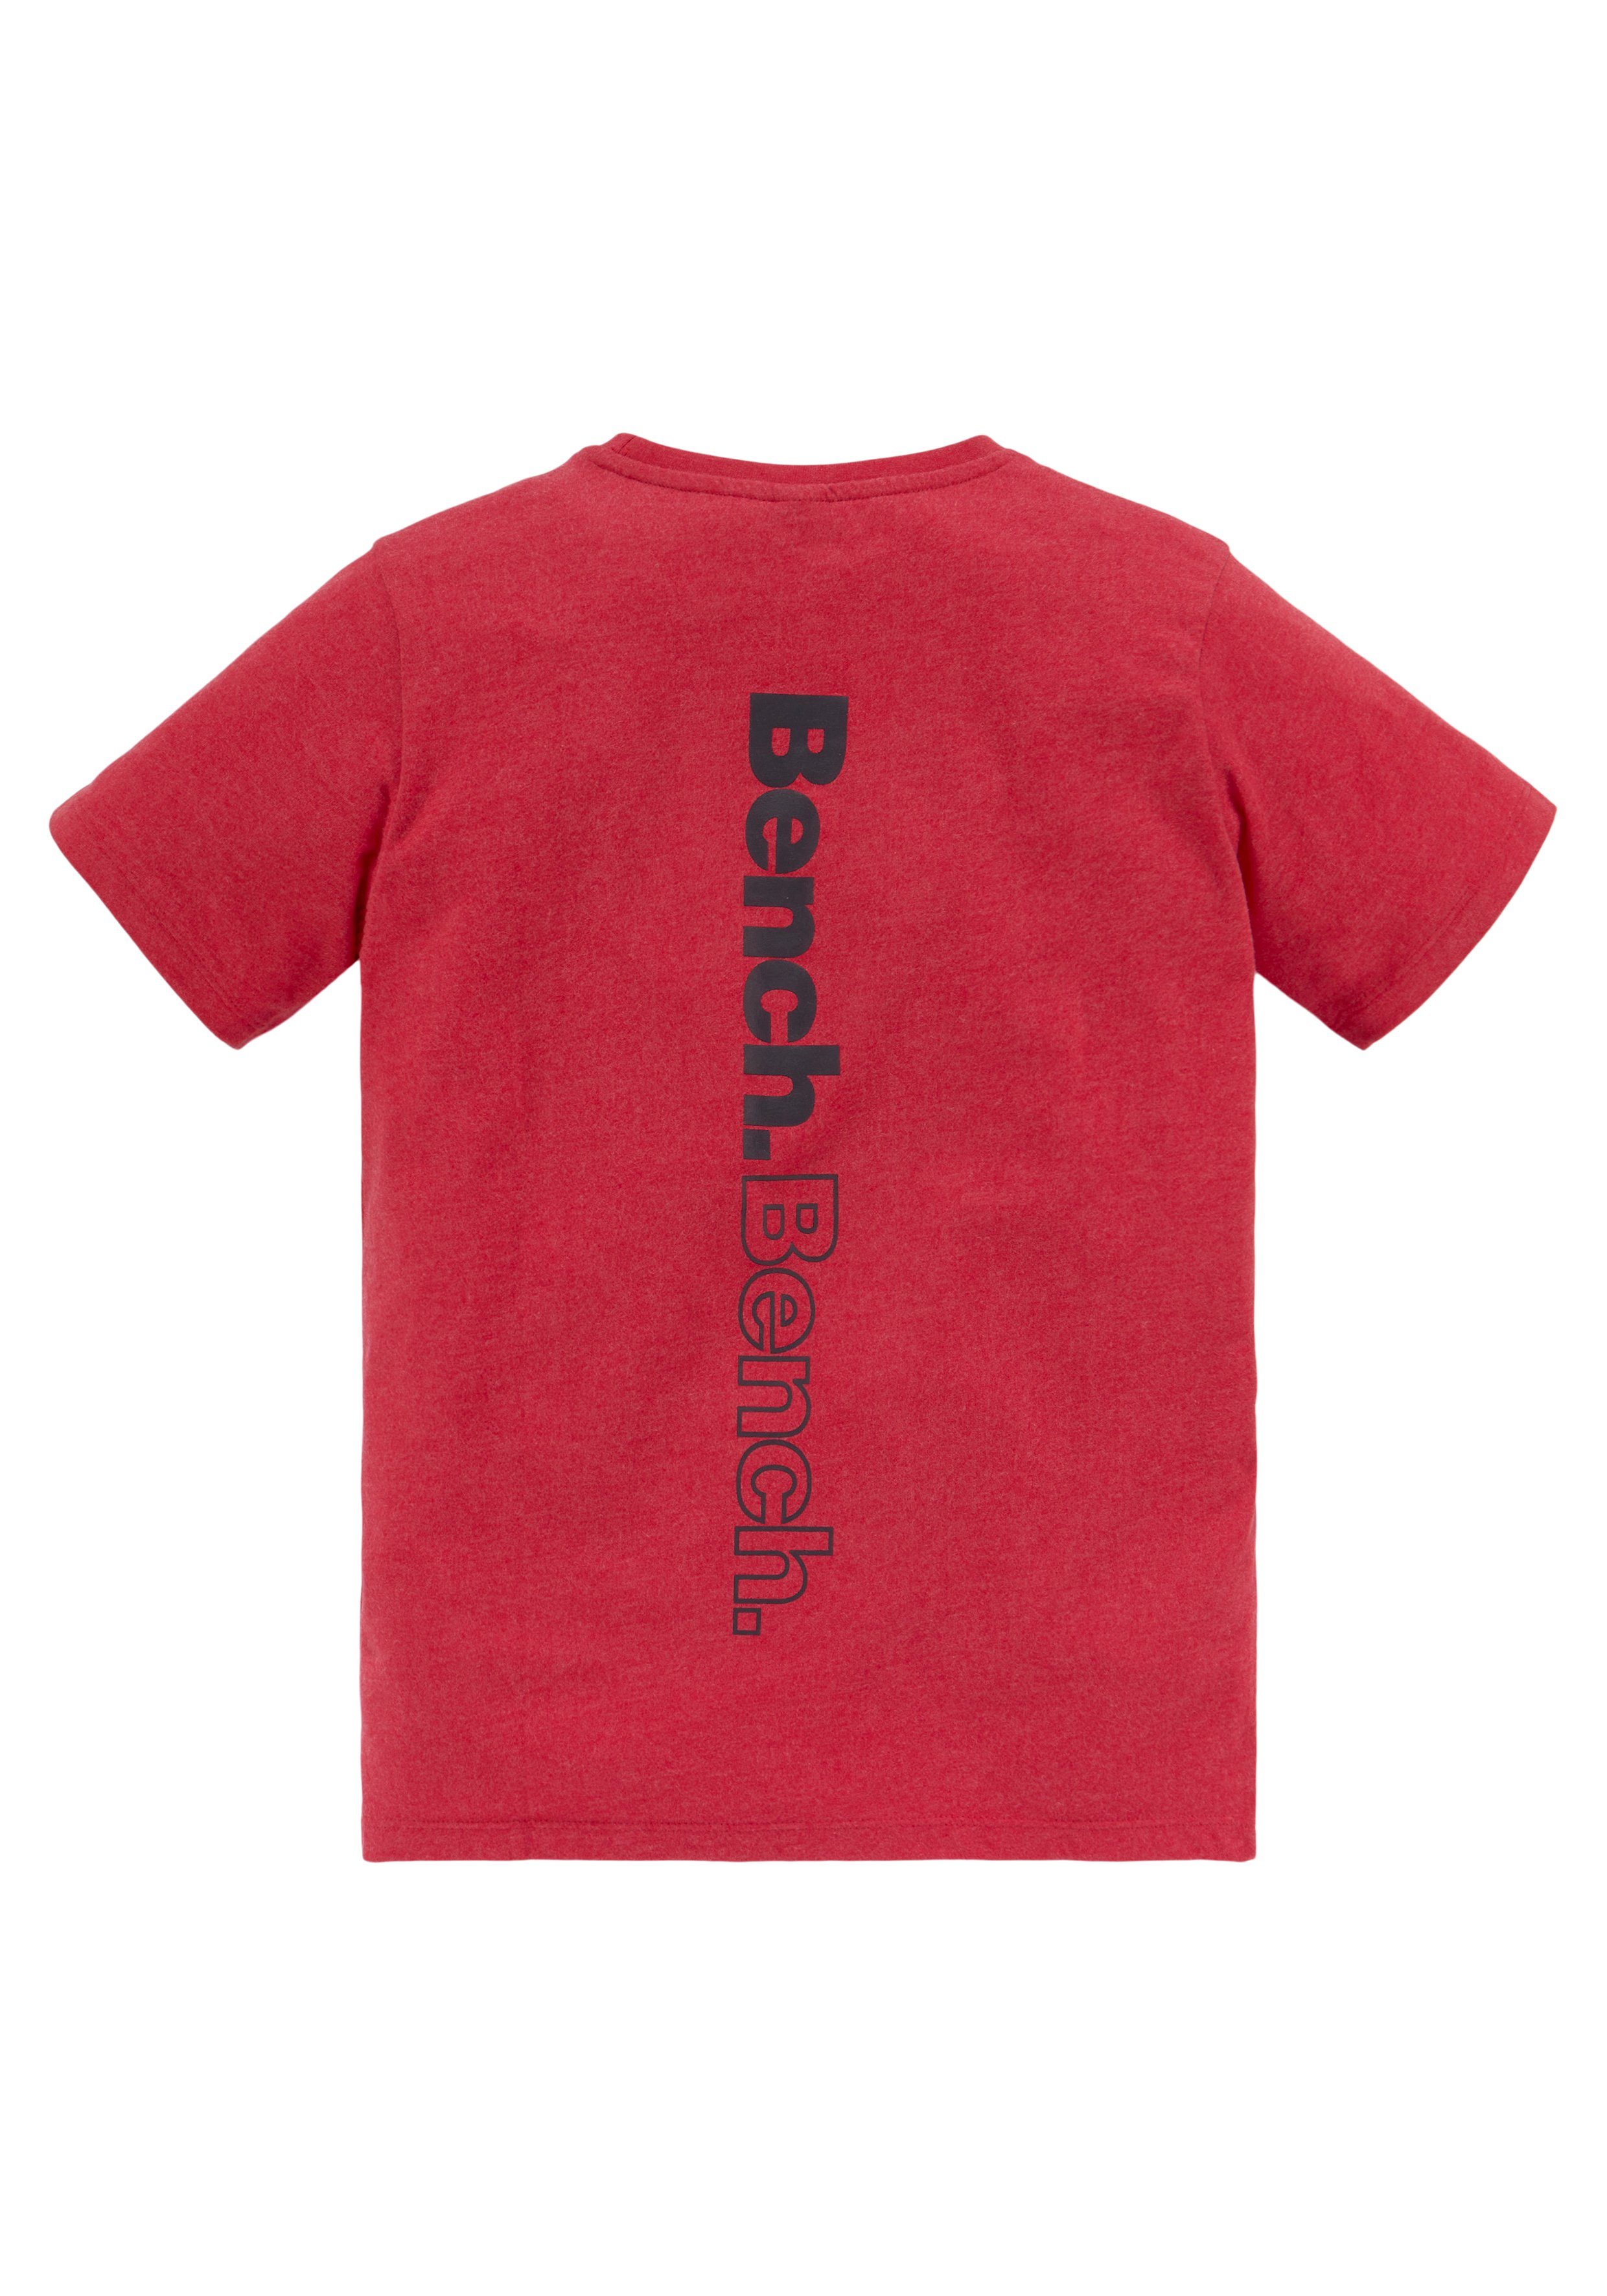 Basic in melierter Qualität mit Rückendruck und Bench. T-Shirt